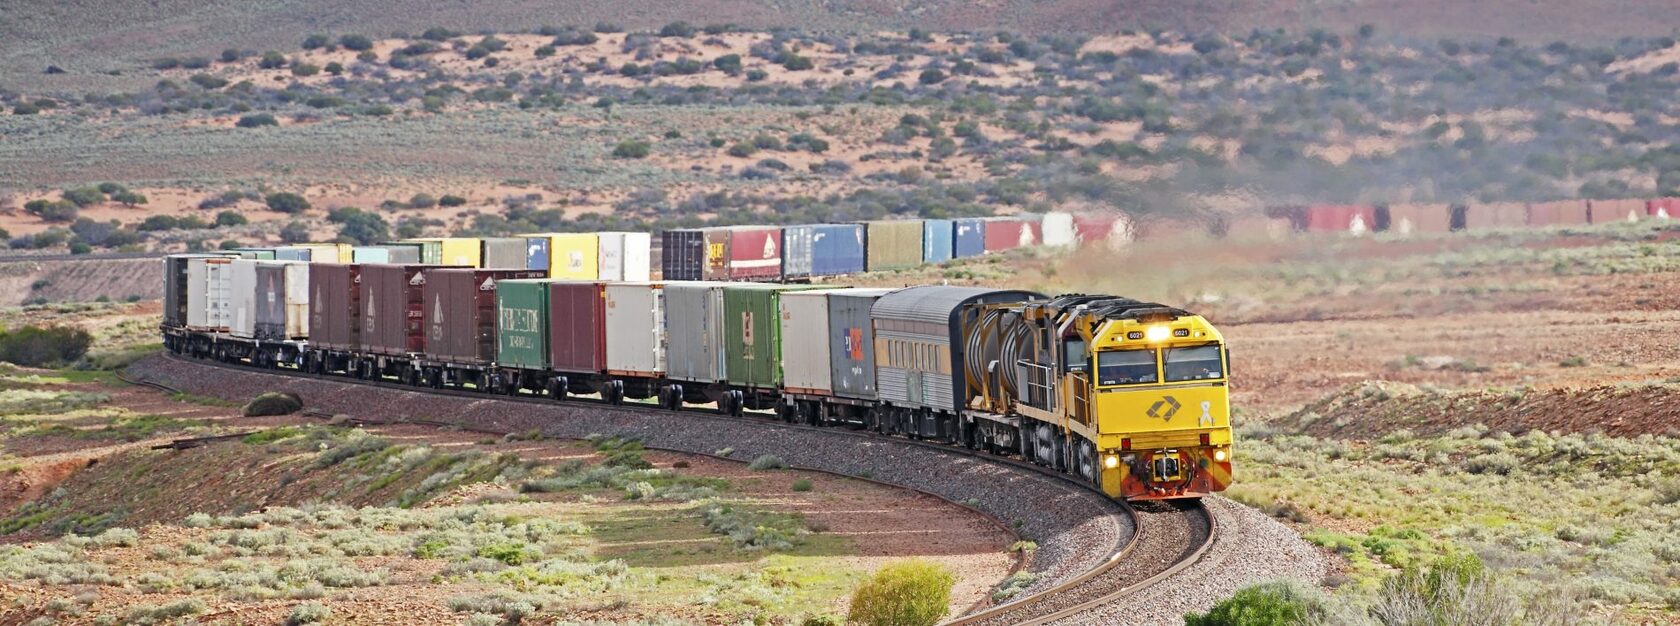 Железнодорожное сообщение из Узбекистана в Пакистан через Афганистан